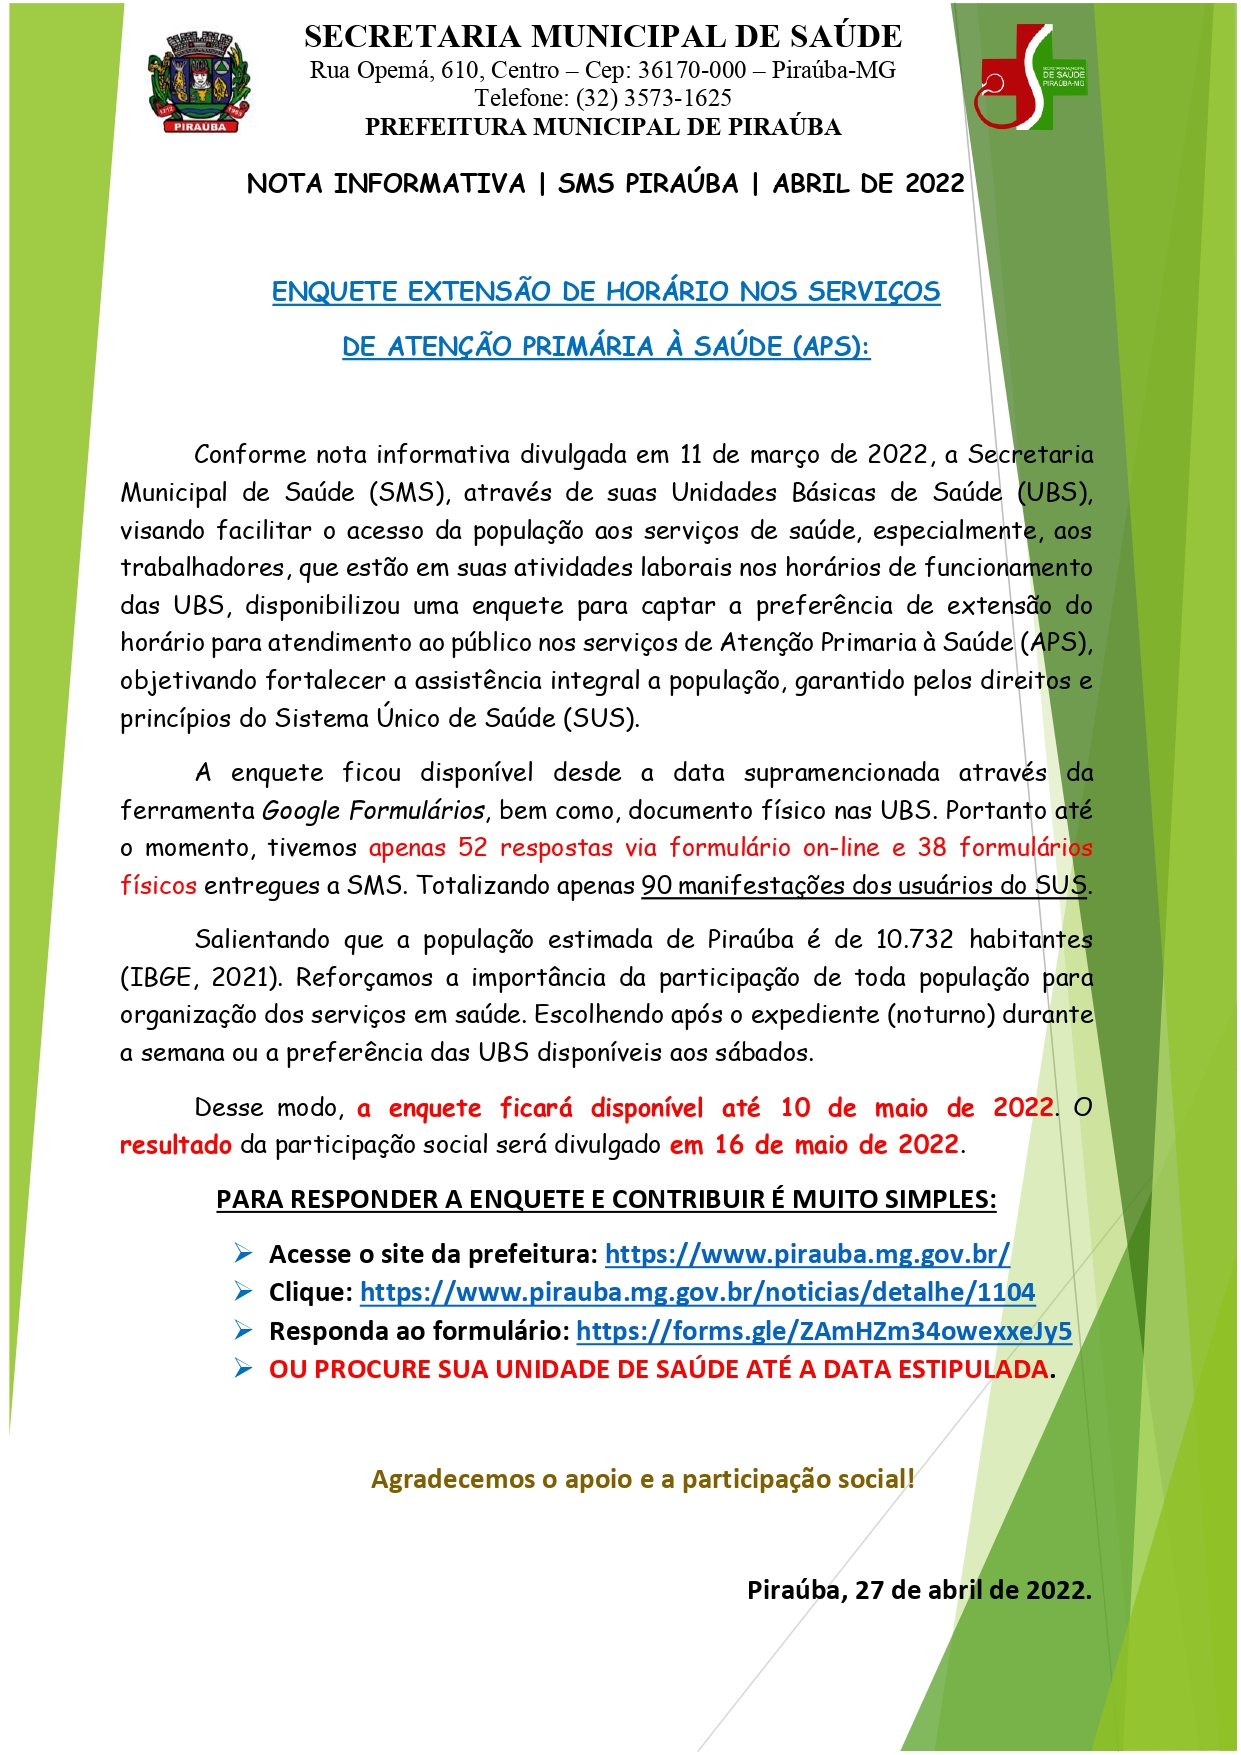 ENQUETE: EXTENSÃO DE HORÁRIO NOS SERVIÇOS  DE ATENÇÃO PRIMÁRIA À SAÚDE (APS) | SMS PIRAÚBA